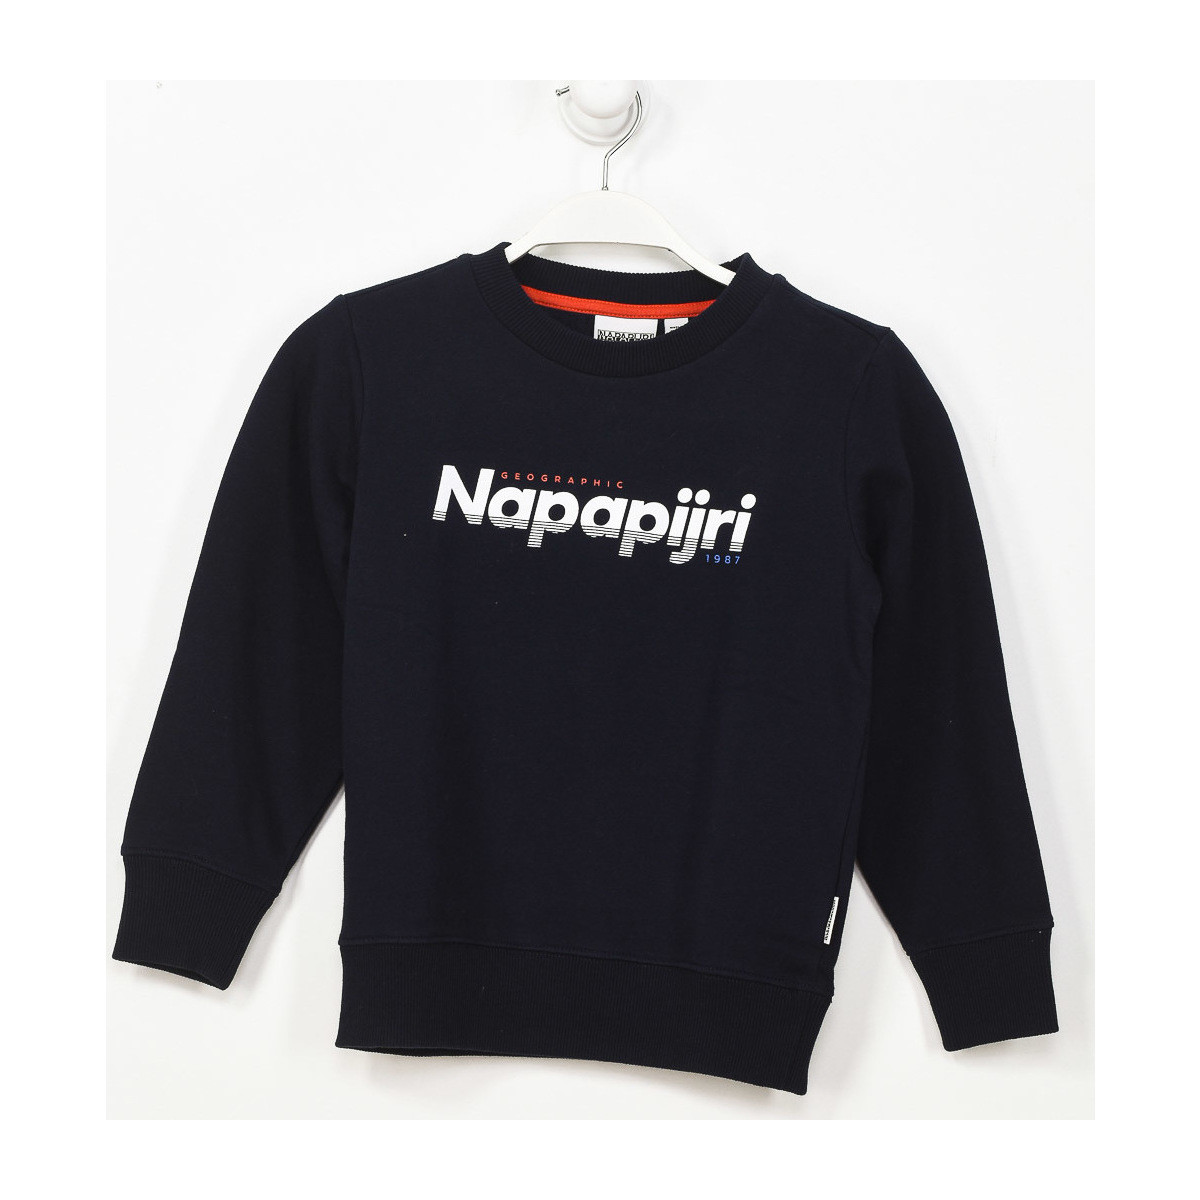 Textiel Jongens Sweaters / Sweatshirts Napapijri GA4EQ6-176 Zwart